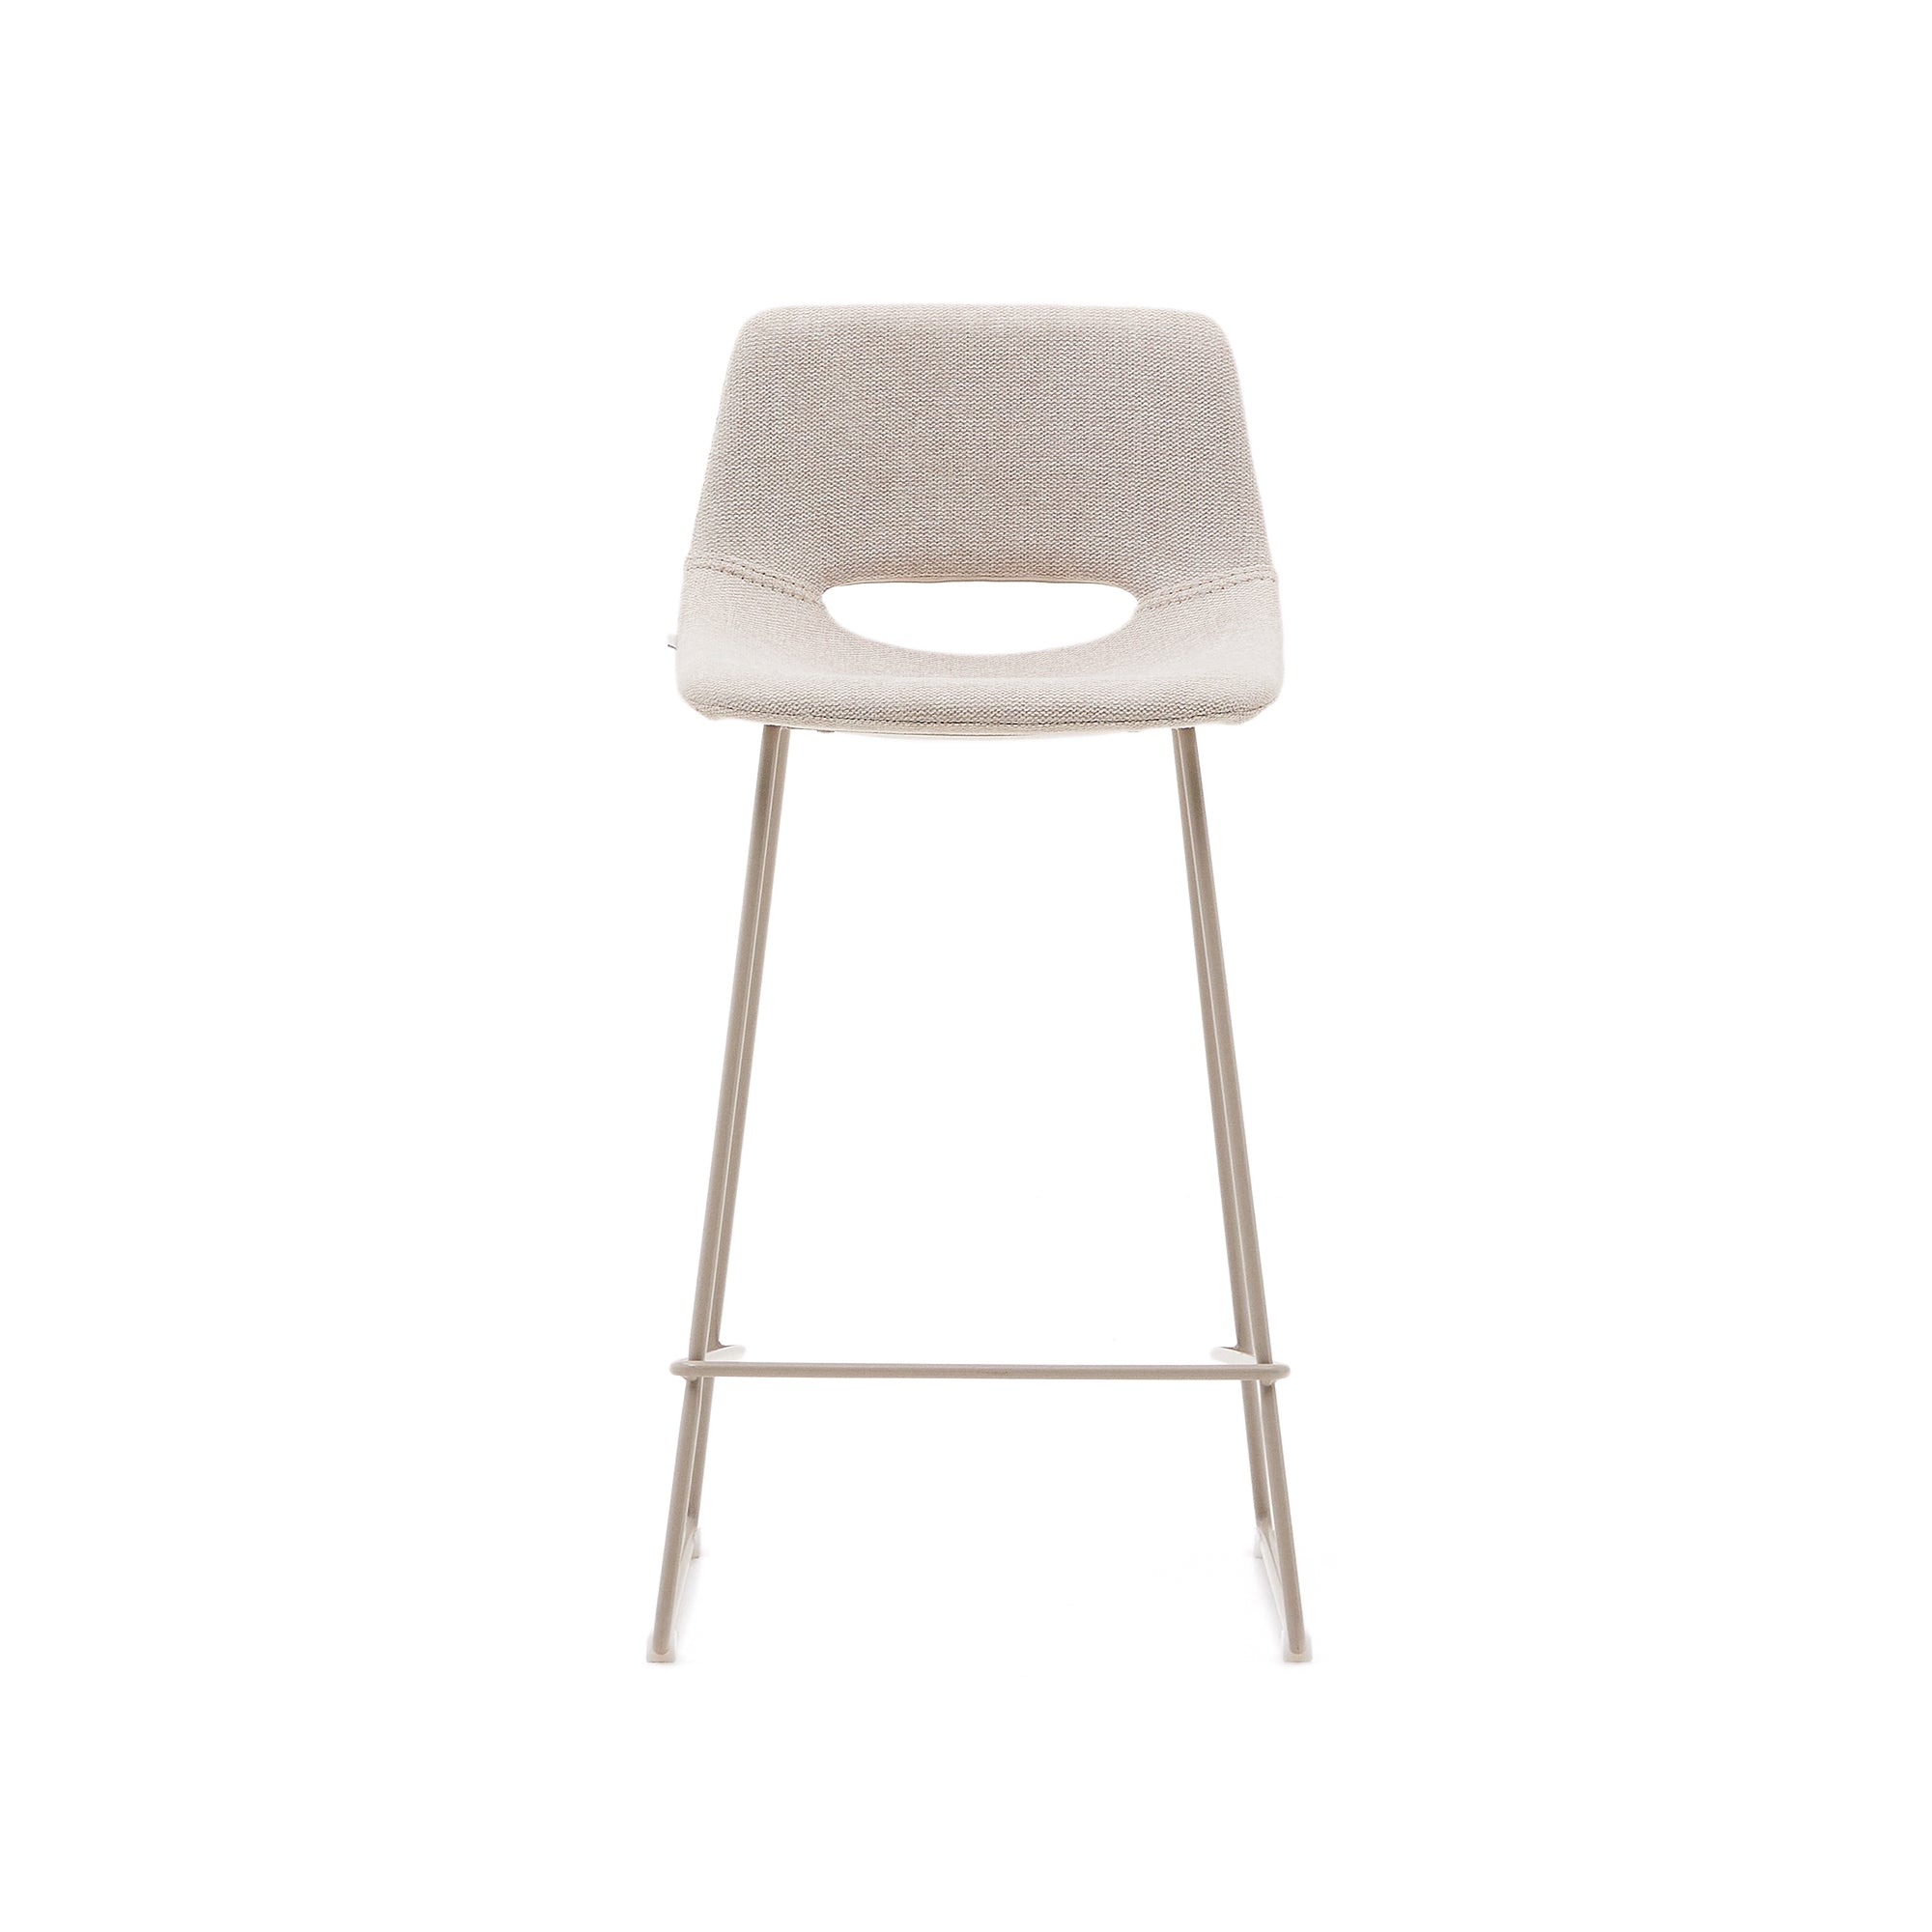 Zahara bézs szék acélból bézs színben, 65 cm magasságban